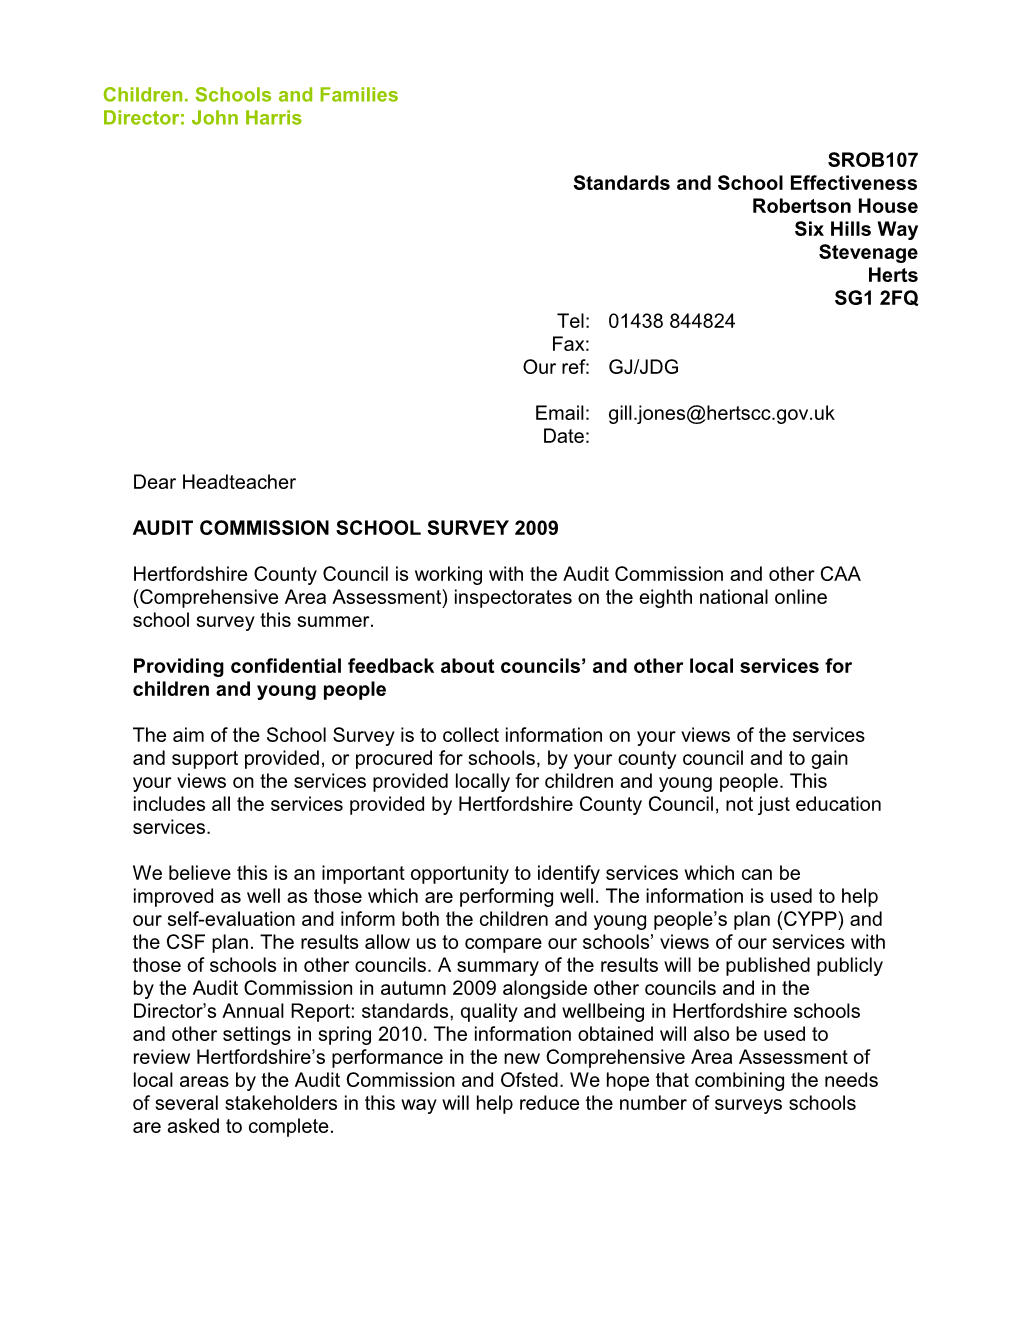 Letter to Schools - Audit Commission Survey